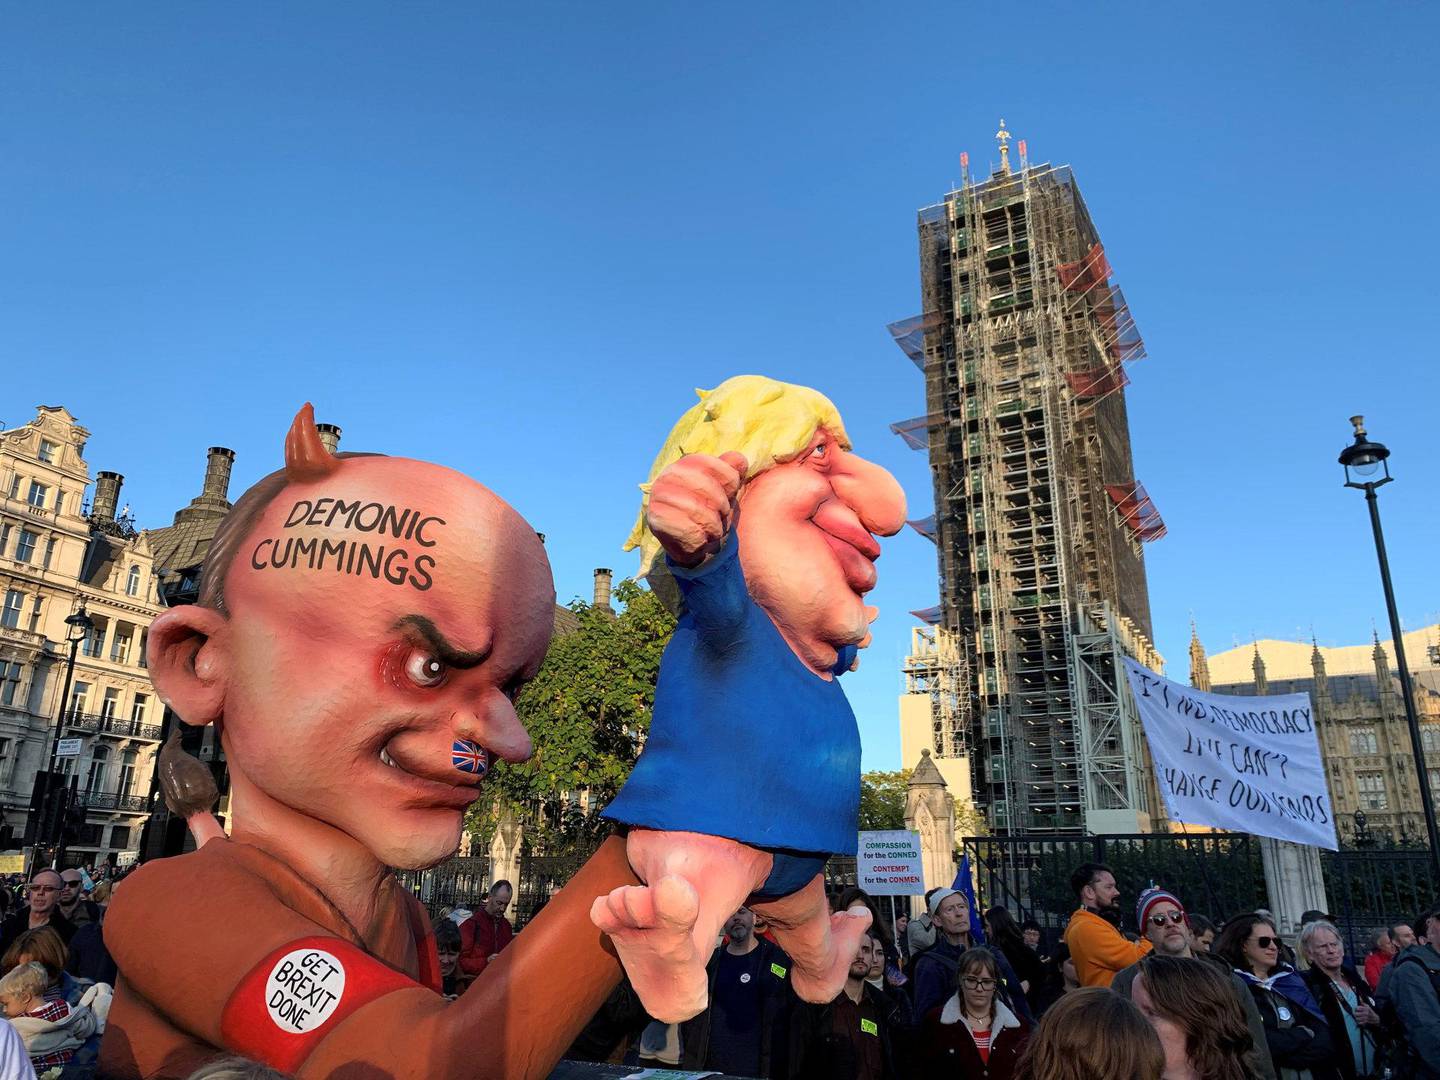 Figurer av Boris Johnson og hans omstridte rådgiver Dominic Cummings – her kalt «Demonic», foran Big Ben under oppussing. FOTO: ÅSNE GULLIKSTAD